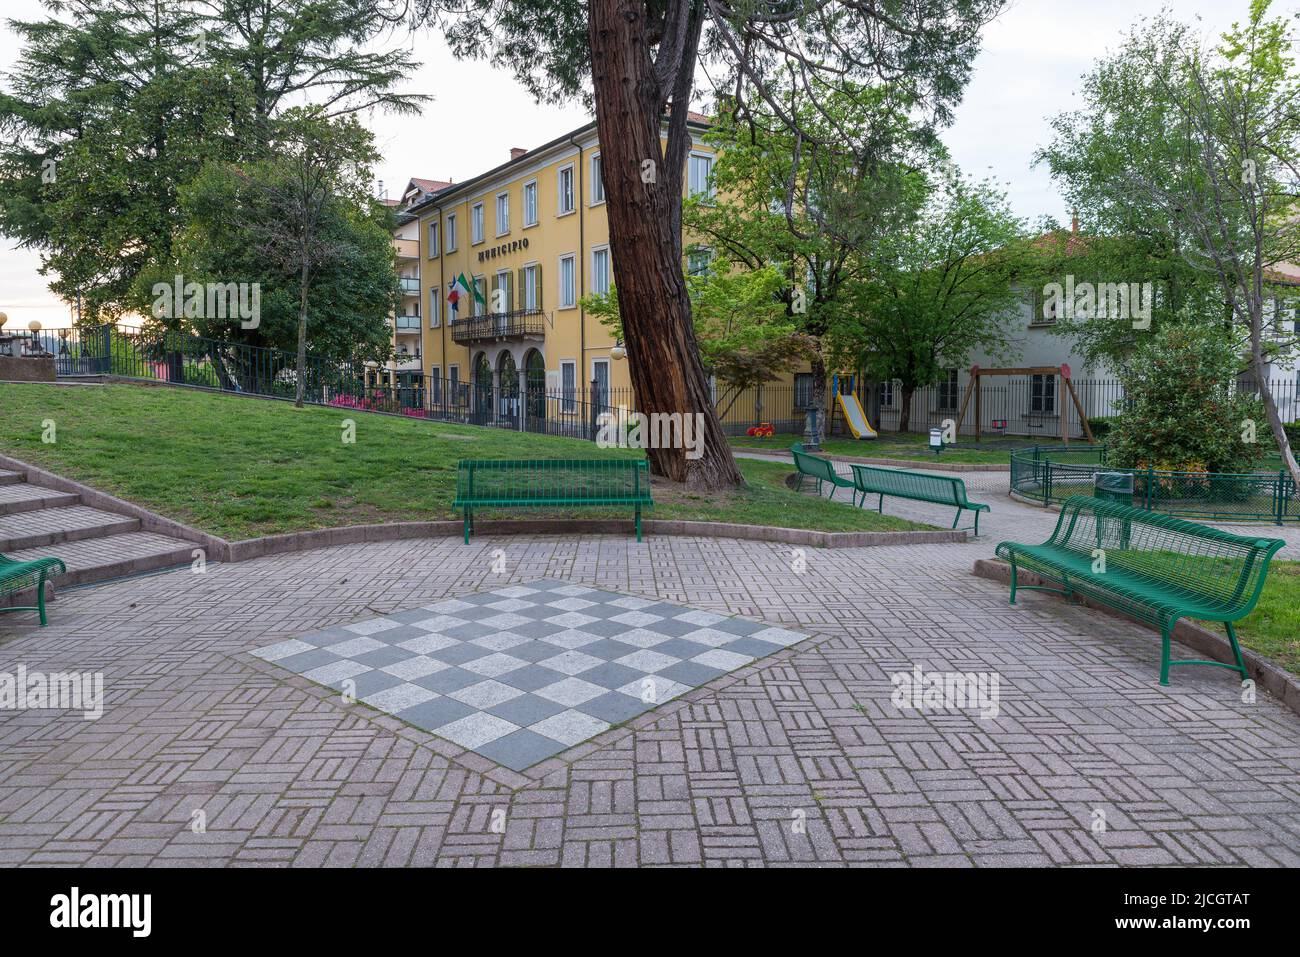 Ayuntamiento (municipio, como está escrito en la fachada), Malnate, Italia. Plaza Vittorio Veneto y pequeños jardines con zona de juegos Foto de stock